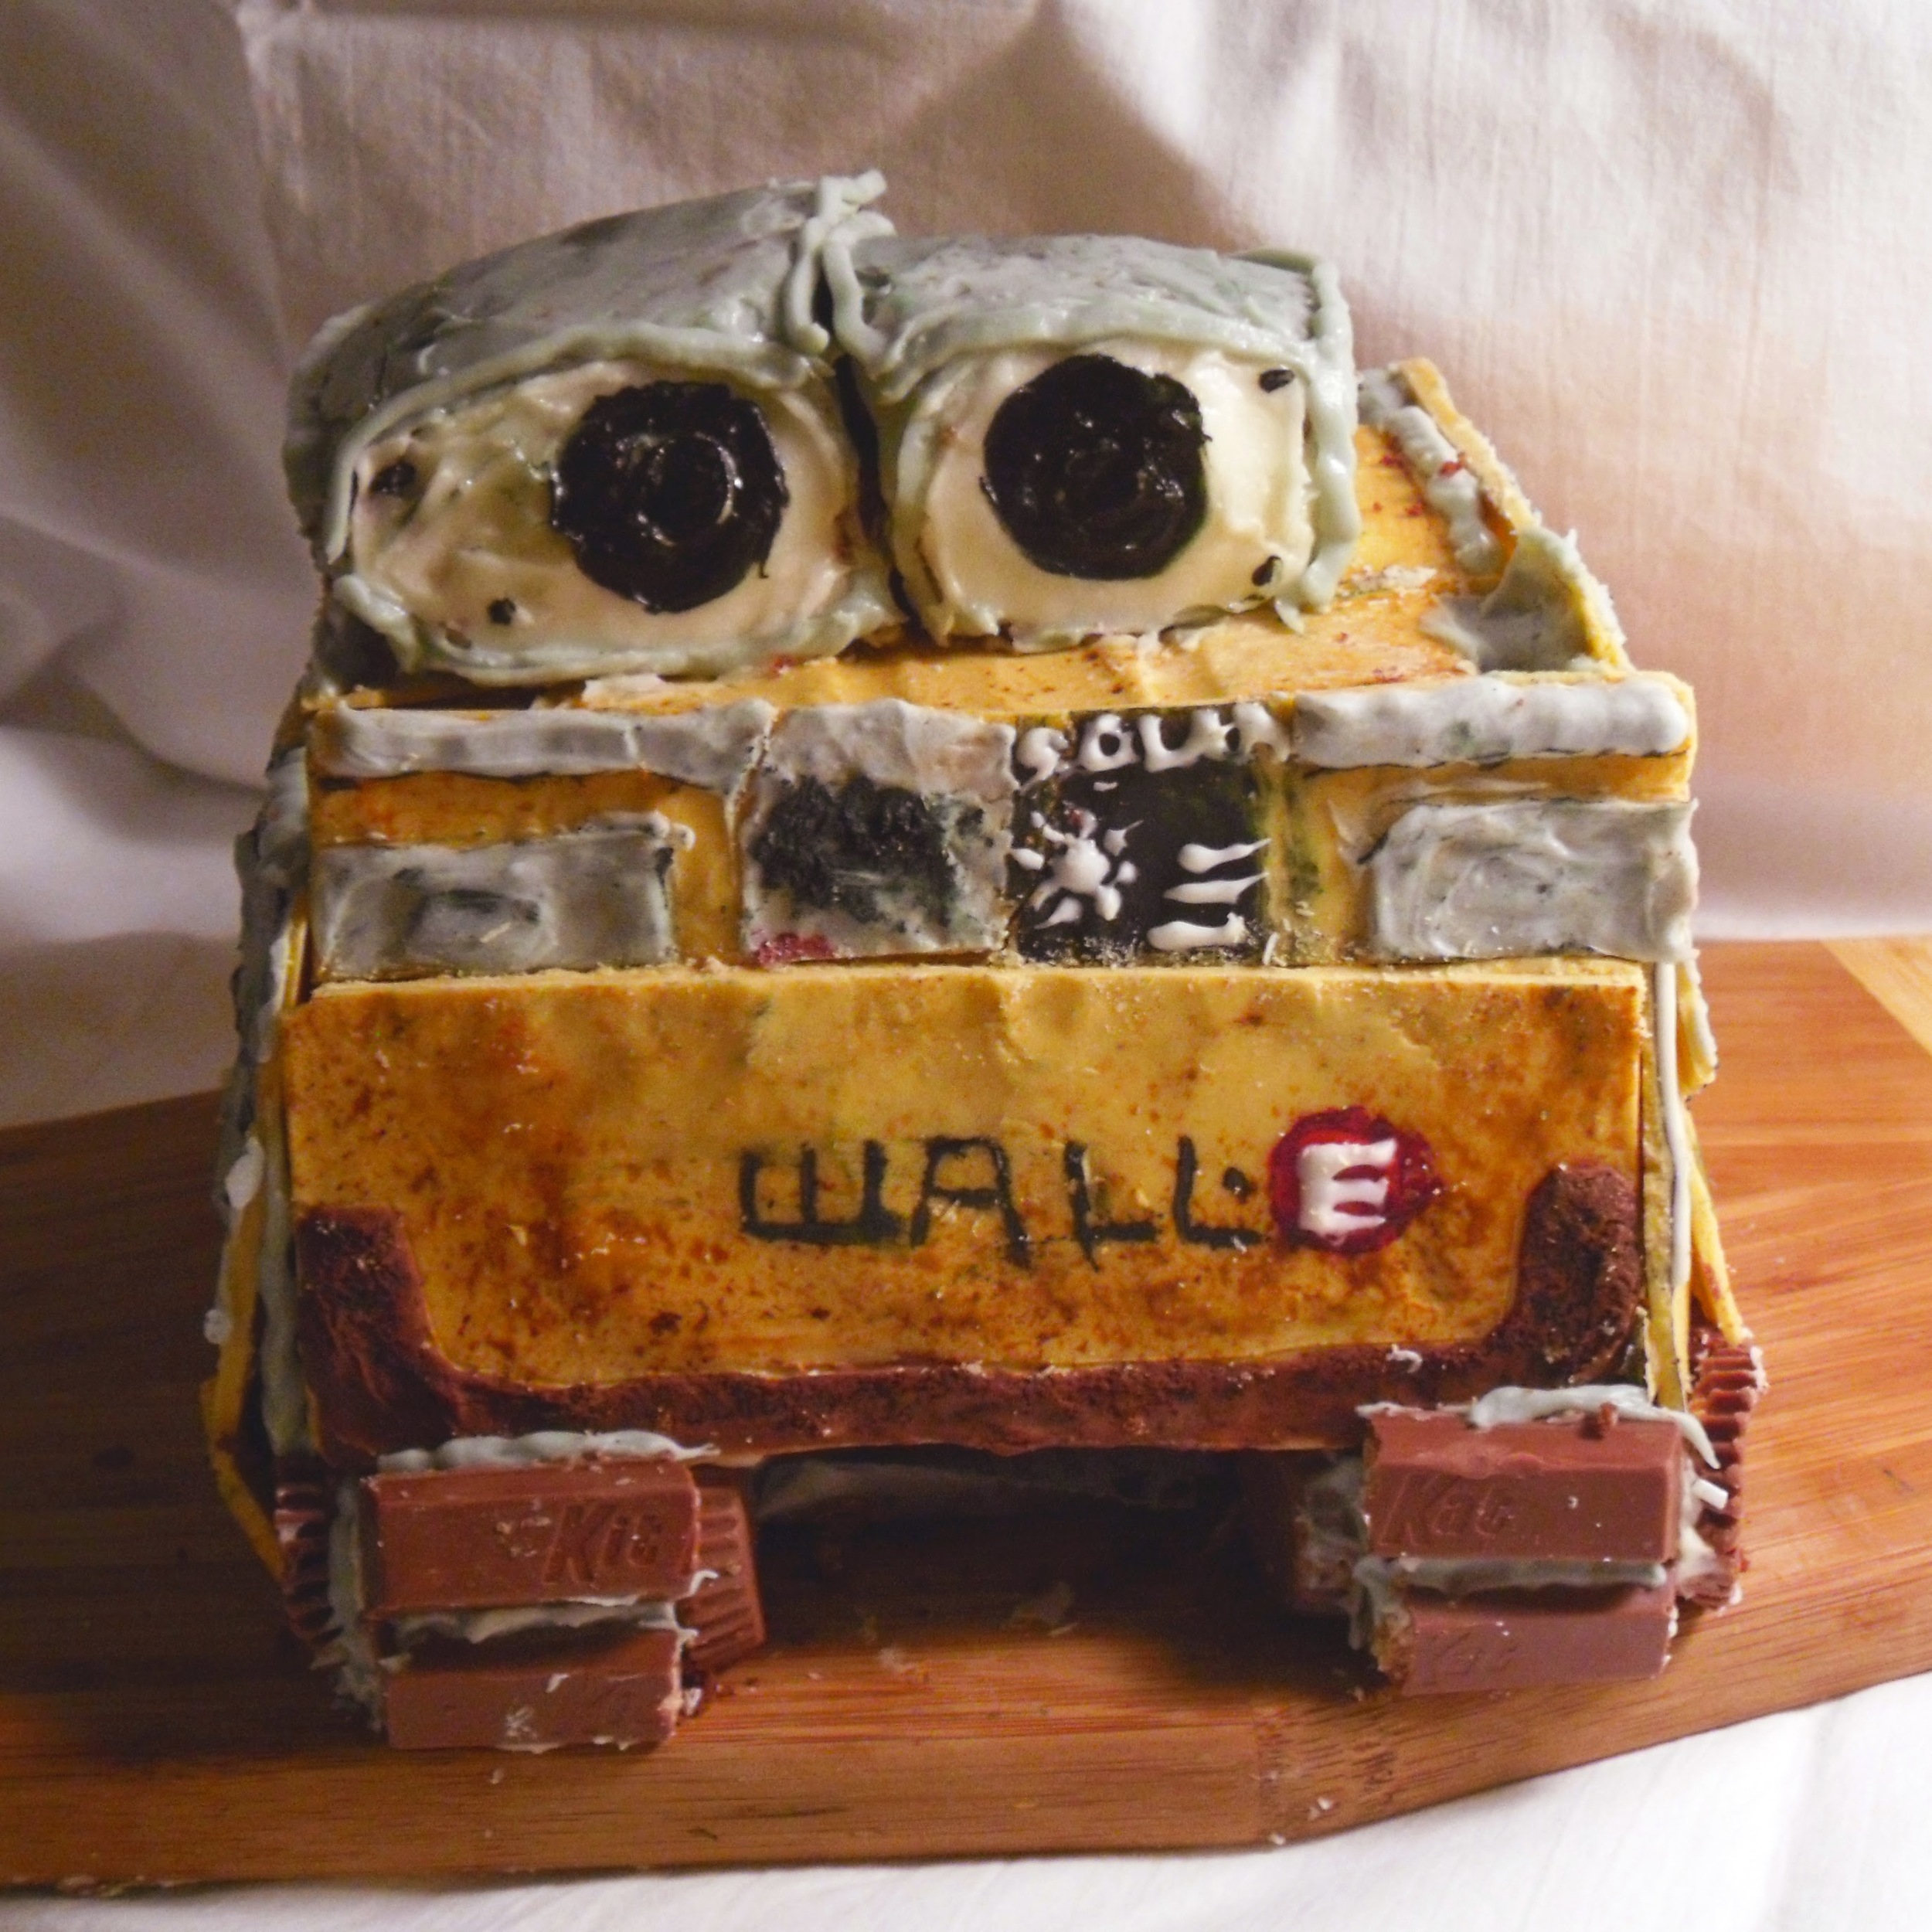 Wall-e cake